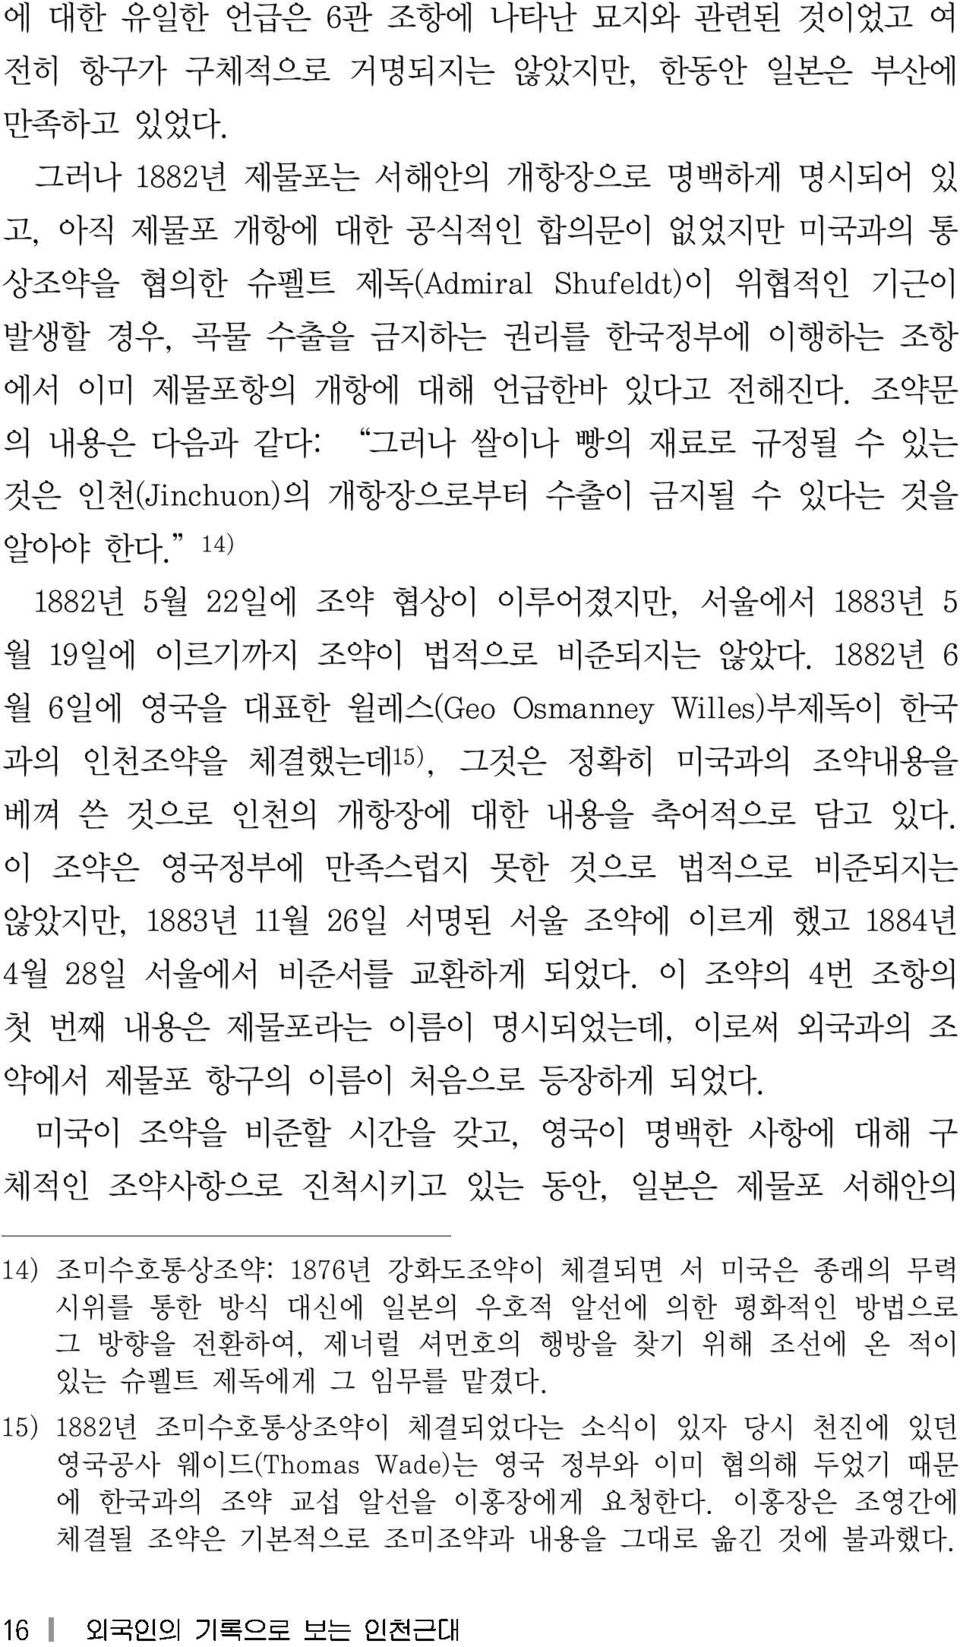 조약문 의 내용은 다음과 같다: 그러나 쌀이나 빵의 재료로 규정될 수 있는 것은 인천(Jinchuon) 의 개항장으로부터 수출이 금지될 수 있다는 것을 알아야 한다. 14) 1882년 5월 22 일에 조약 협상이 이루어졌지만, 서울에서 1883년 5 월 19 일에 이르기까지 조약이 법적으로 비준되지는 않았다.